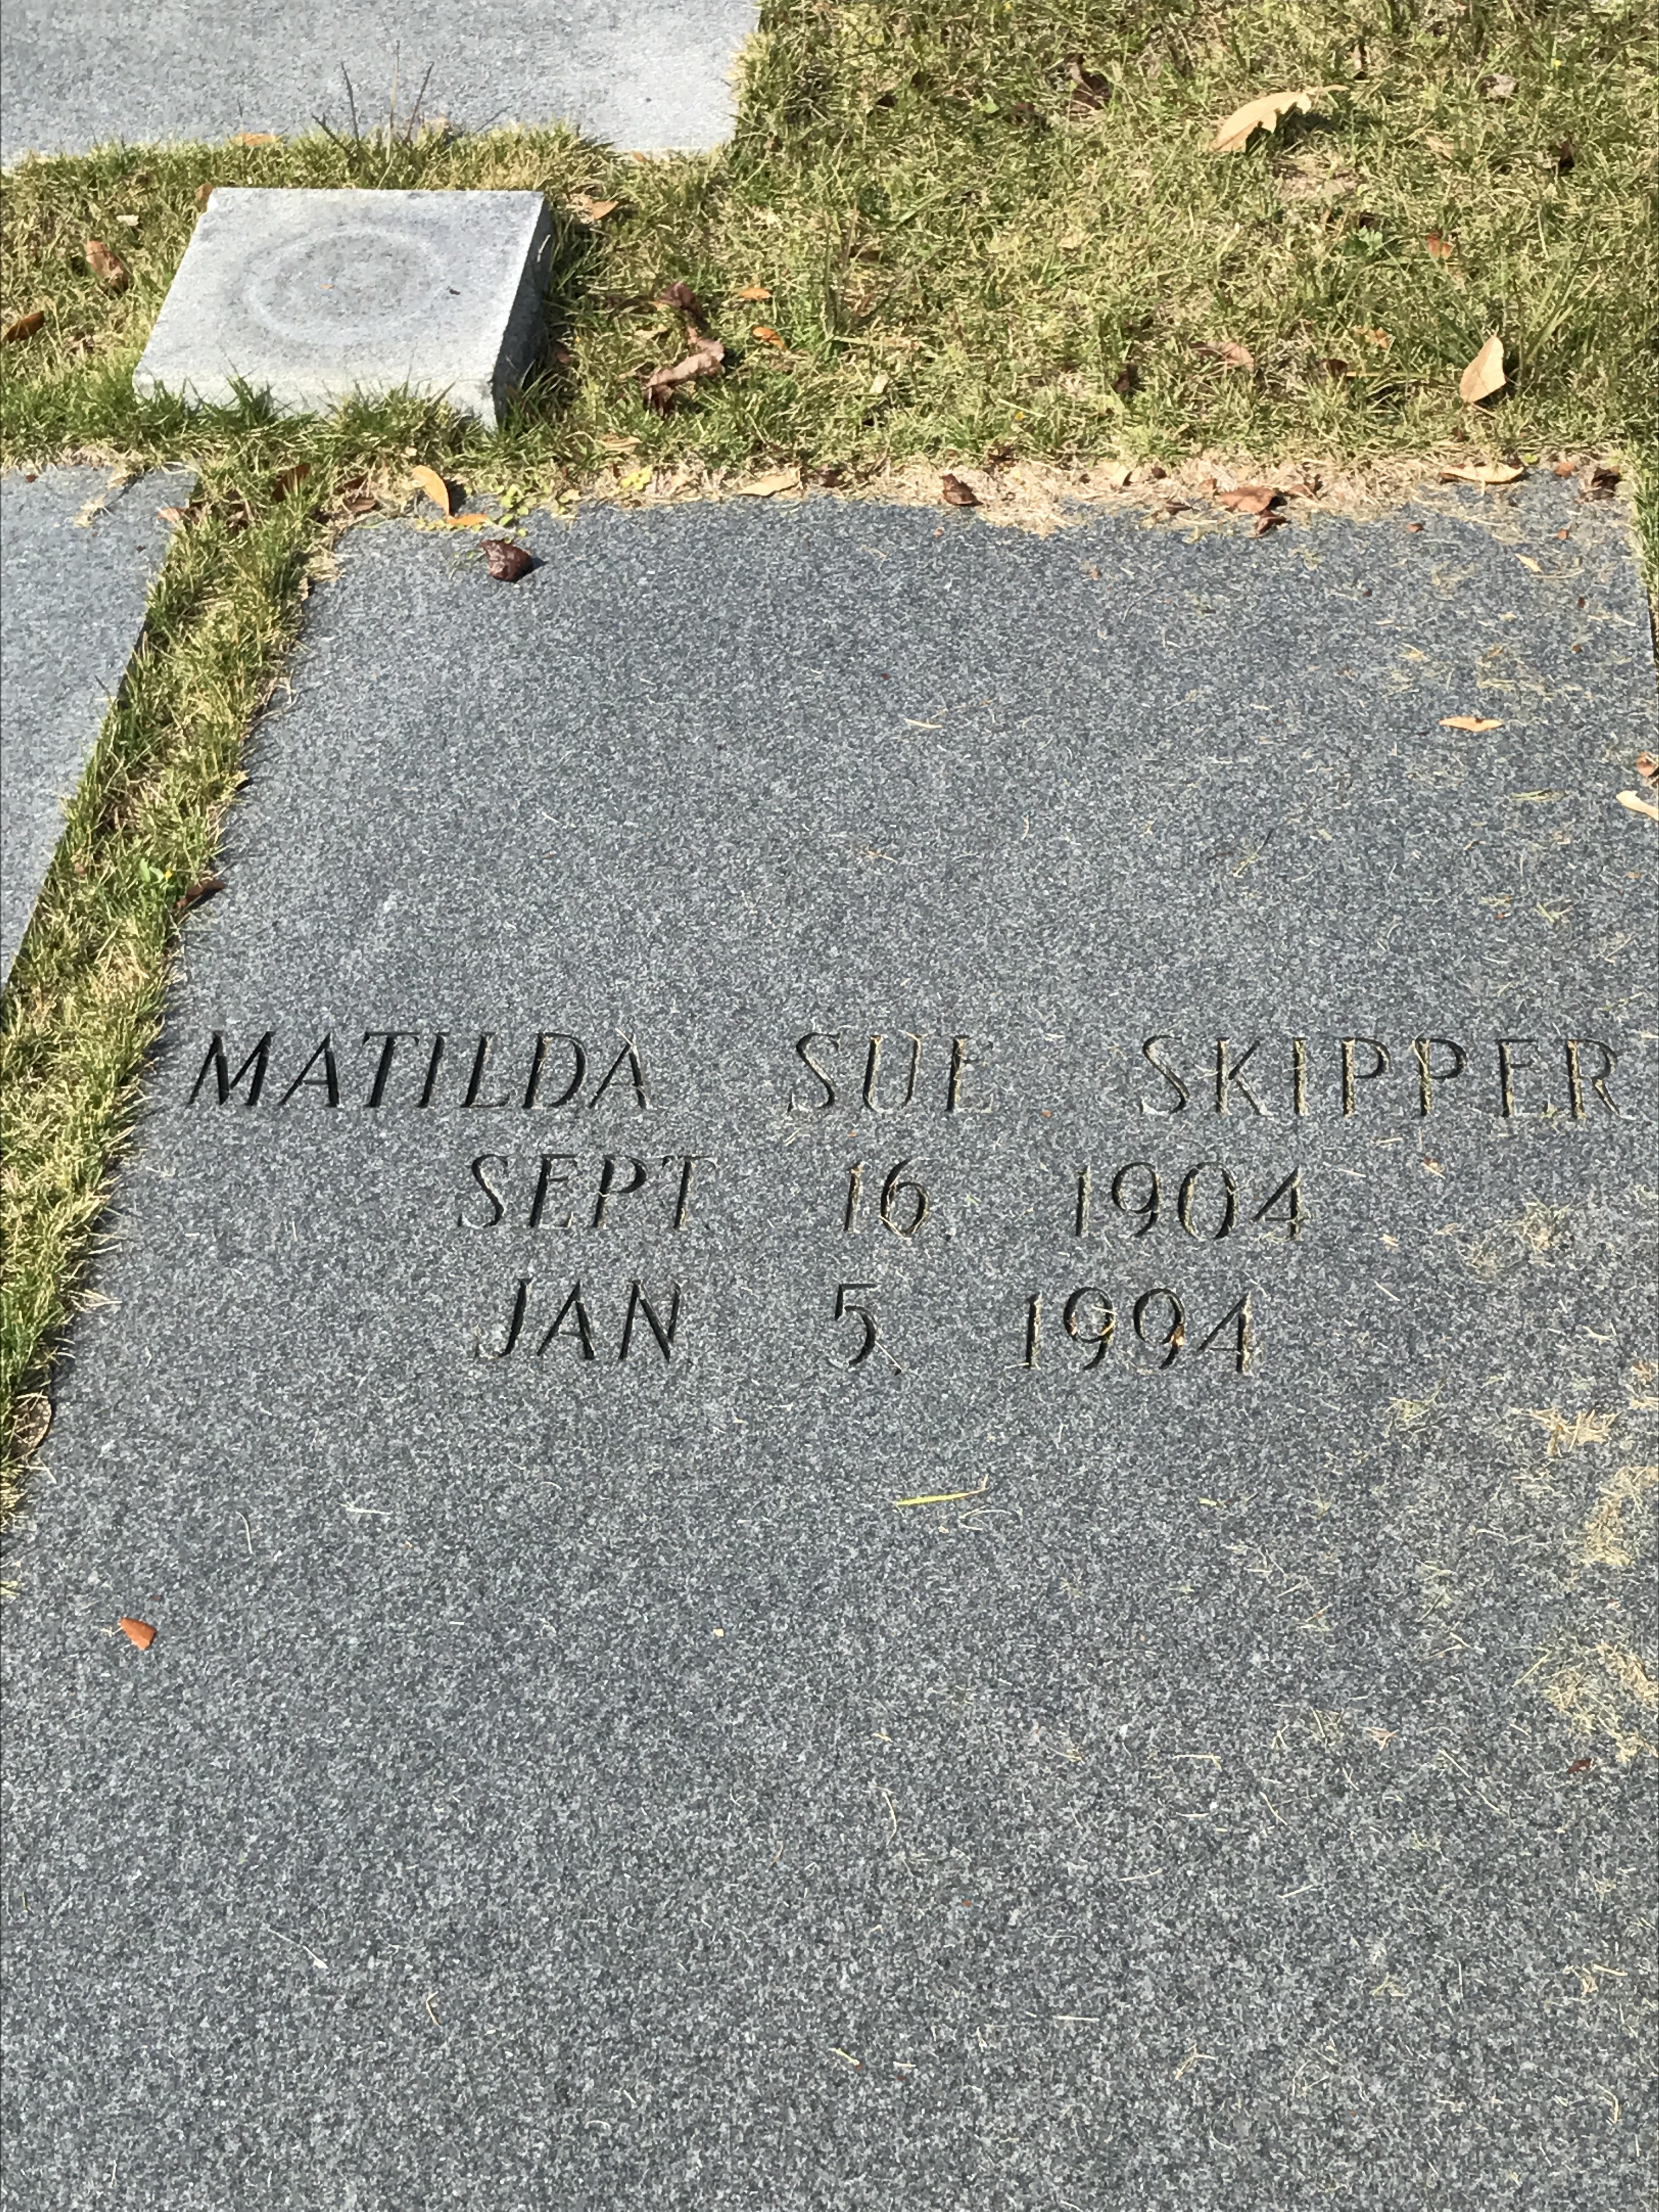 Matilda Sue Skipper